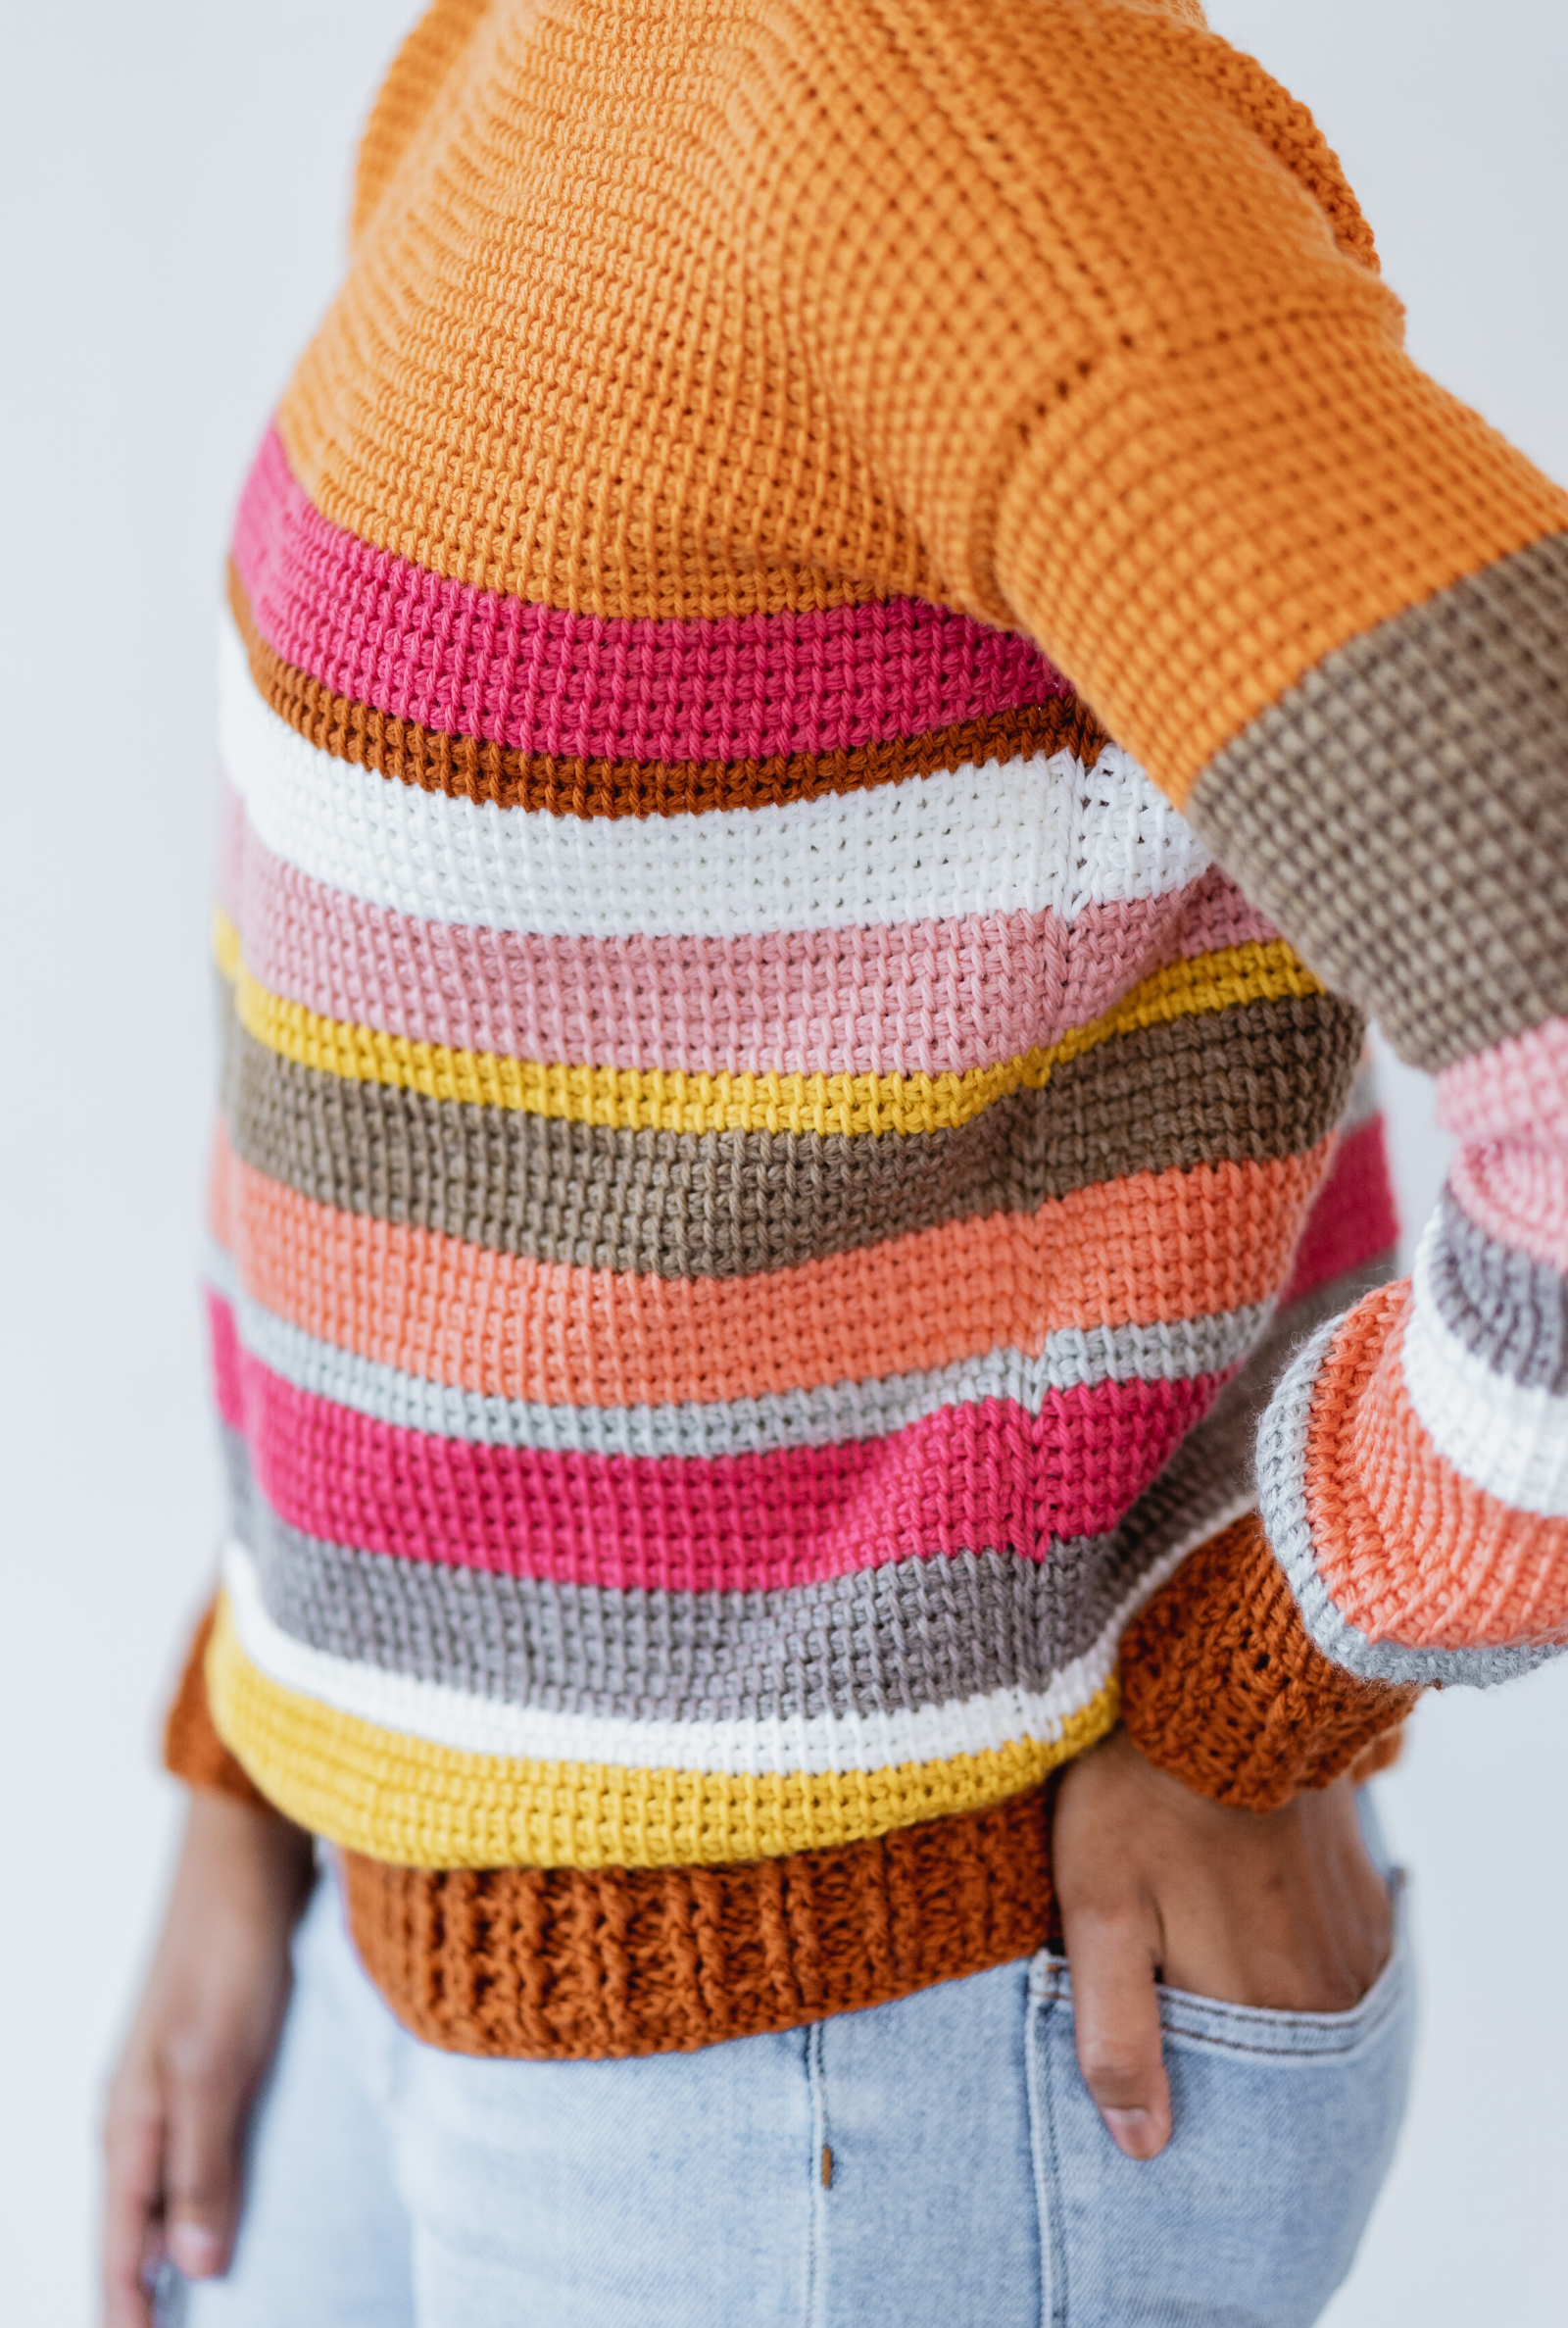 Sedona Sweater // Crochet PDF Pattern